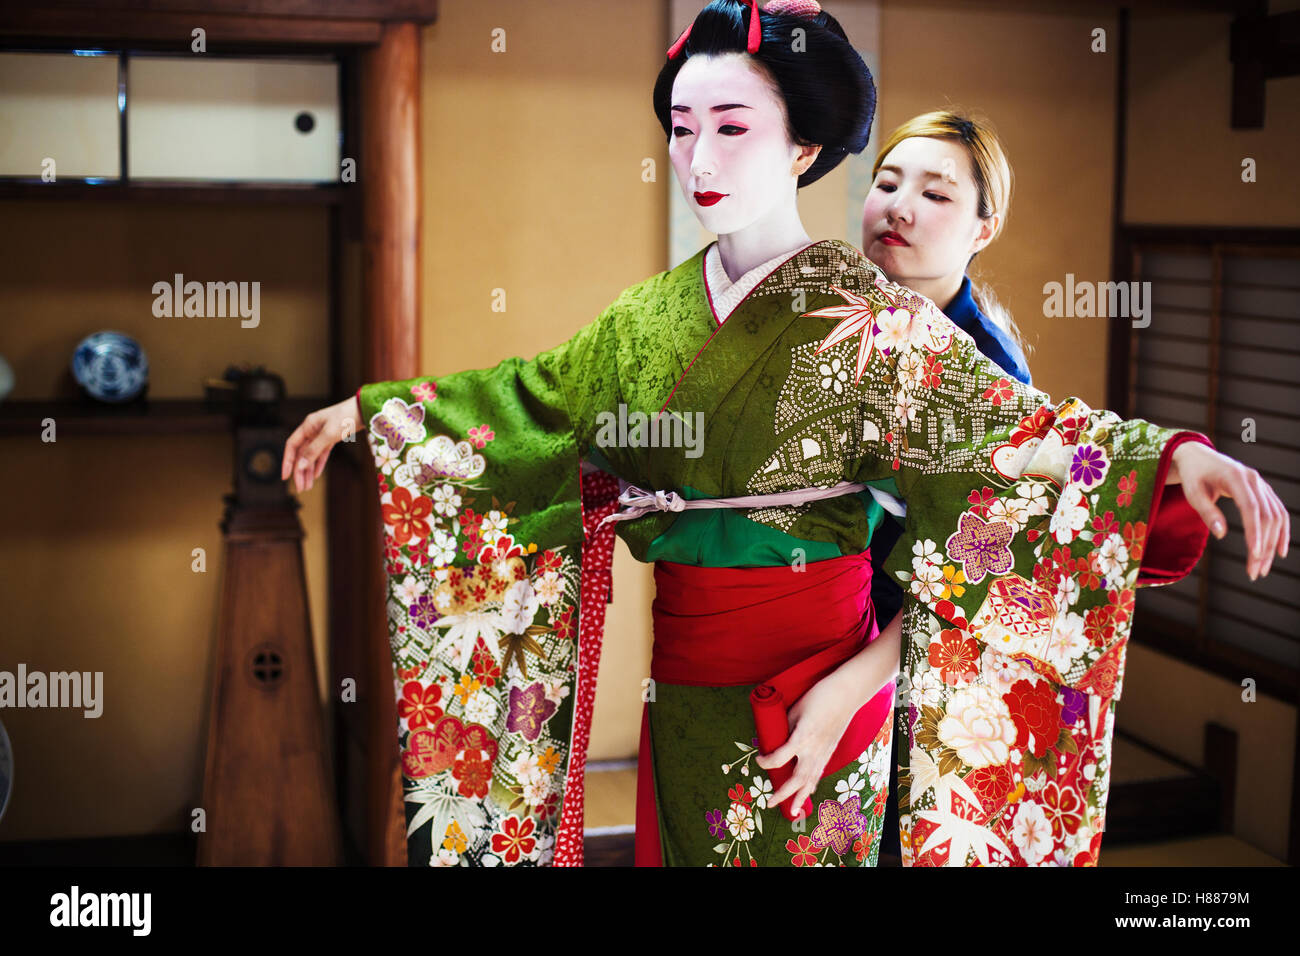 Eine Frau Im Geisha Stil Gekleidet Tragt Einen Kimono Und Obi Mit Einer Aufwendigen Frisur Und Blumige Haarspangen Stockfotografie Alamy